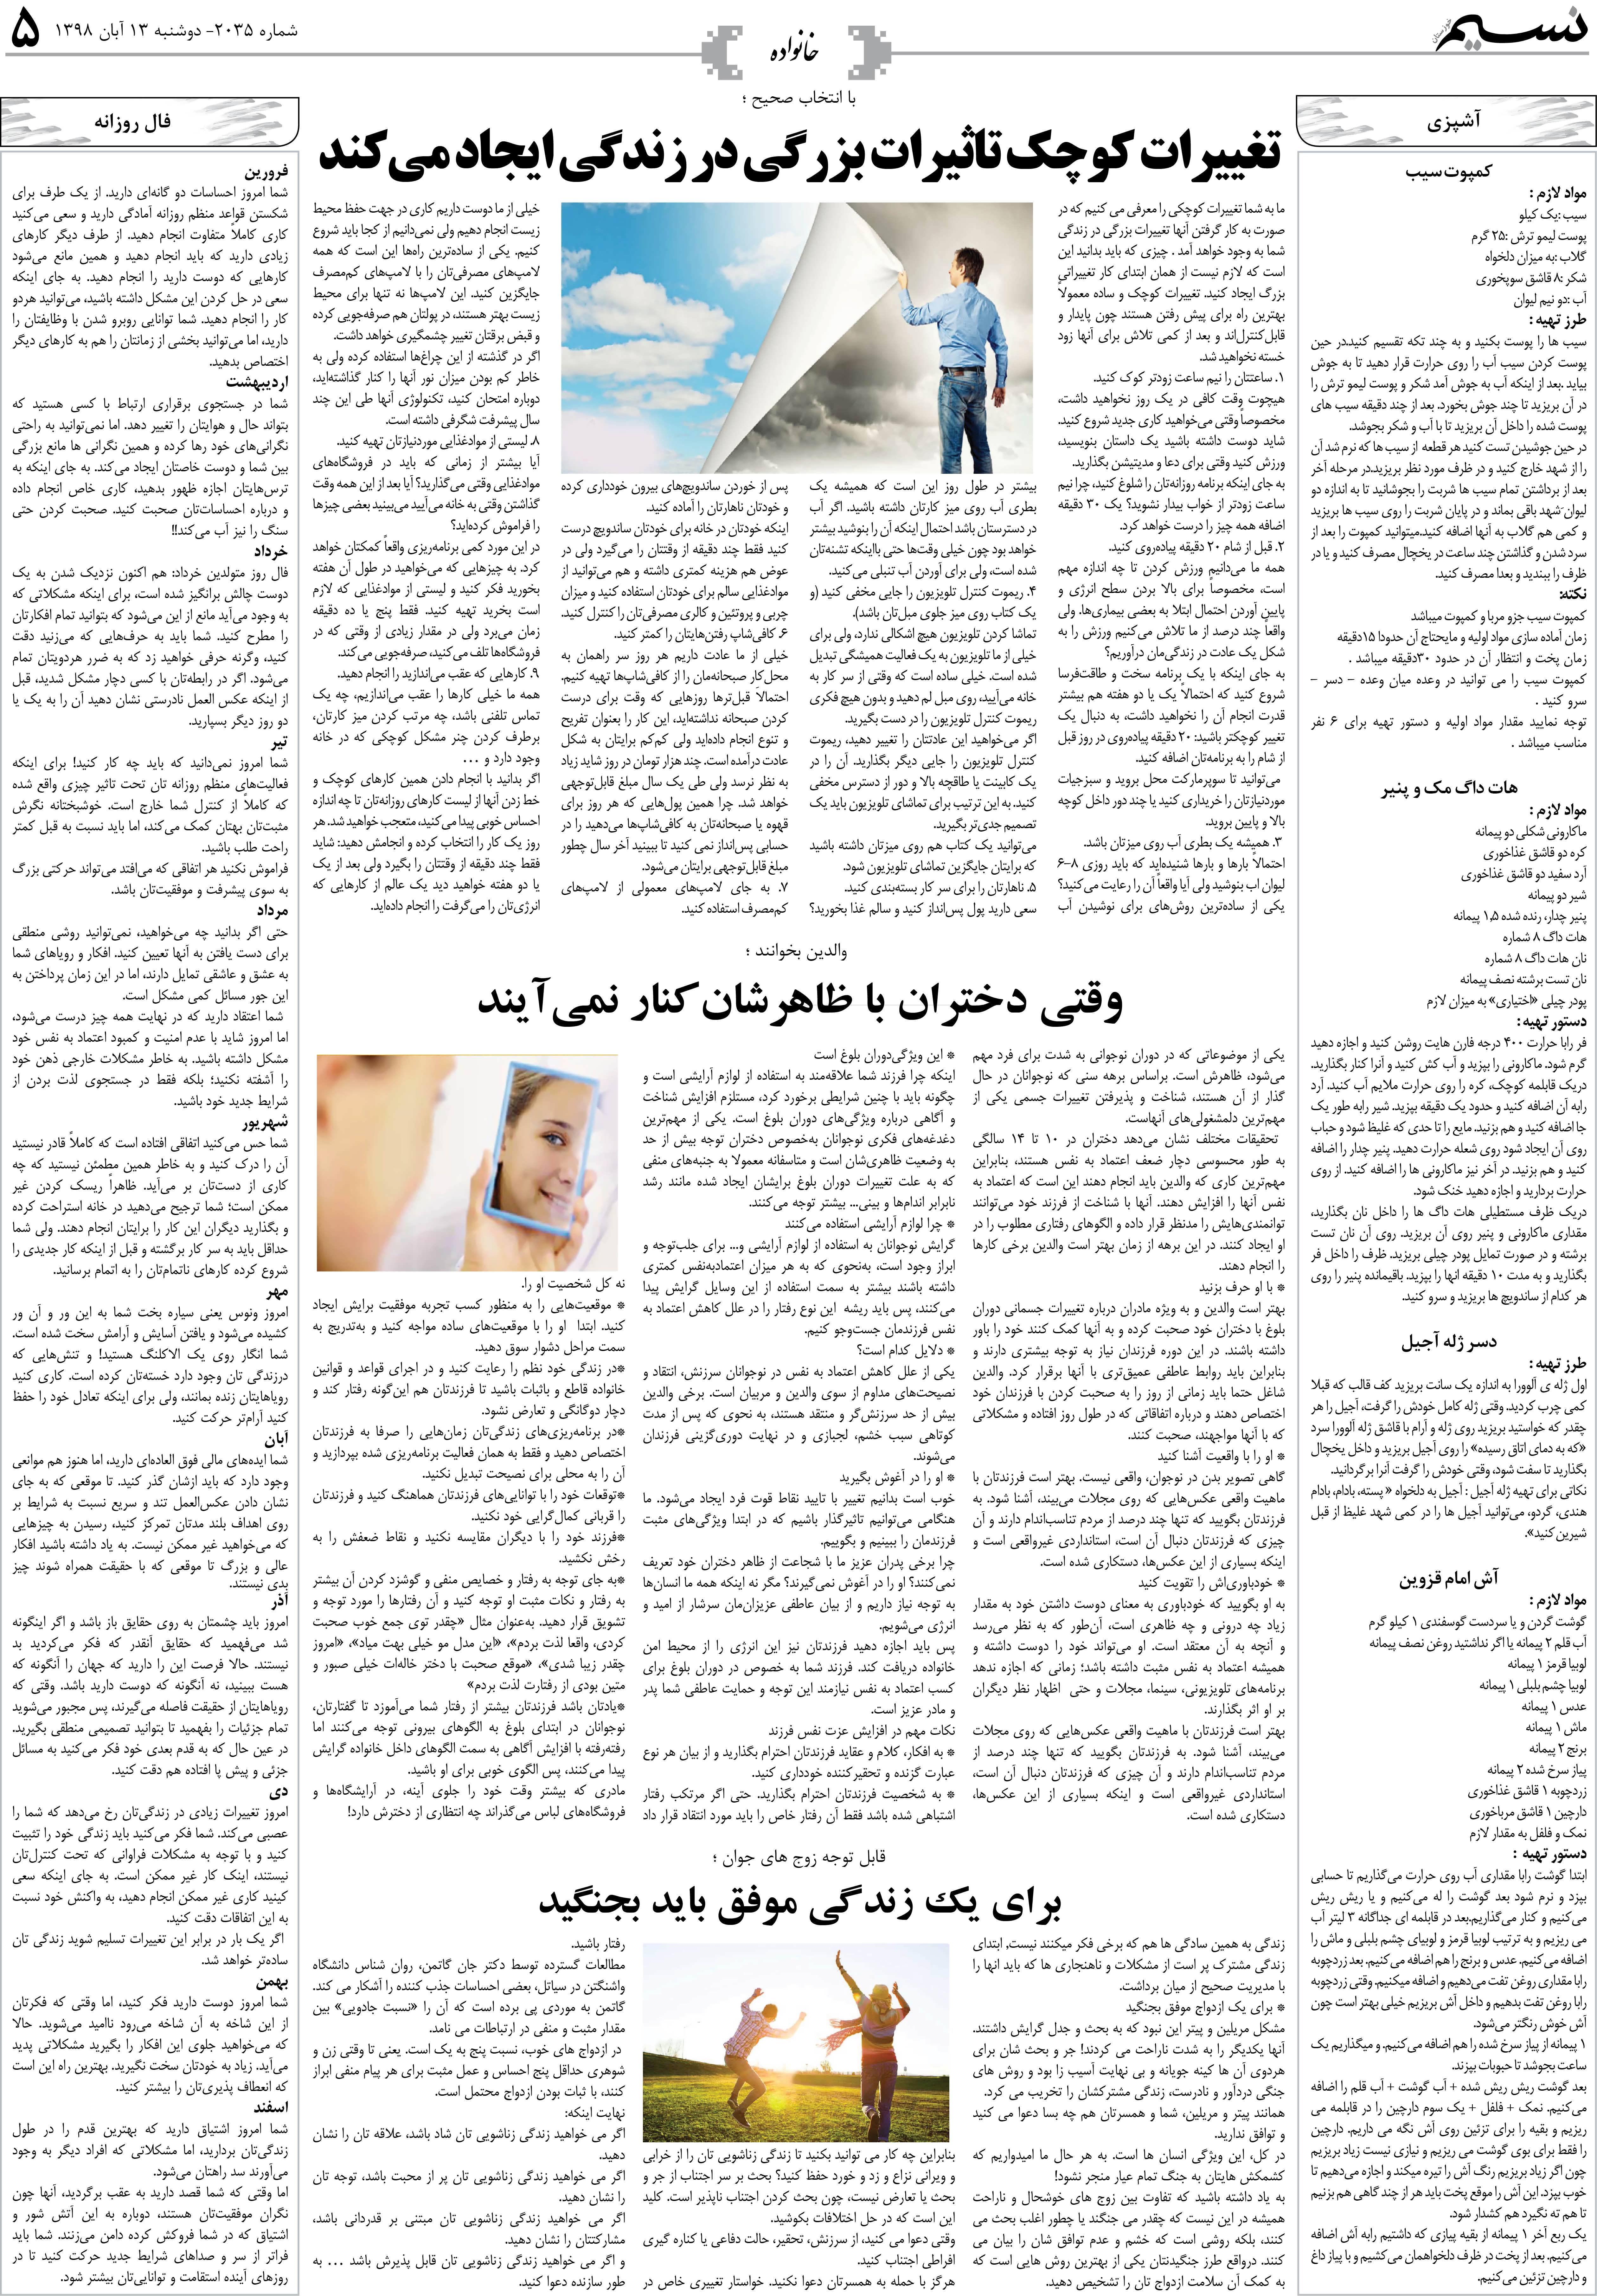 صفحه خانواده روزنامه نسیم شماره 2035